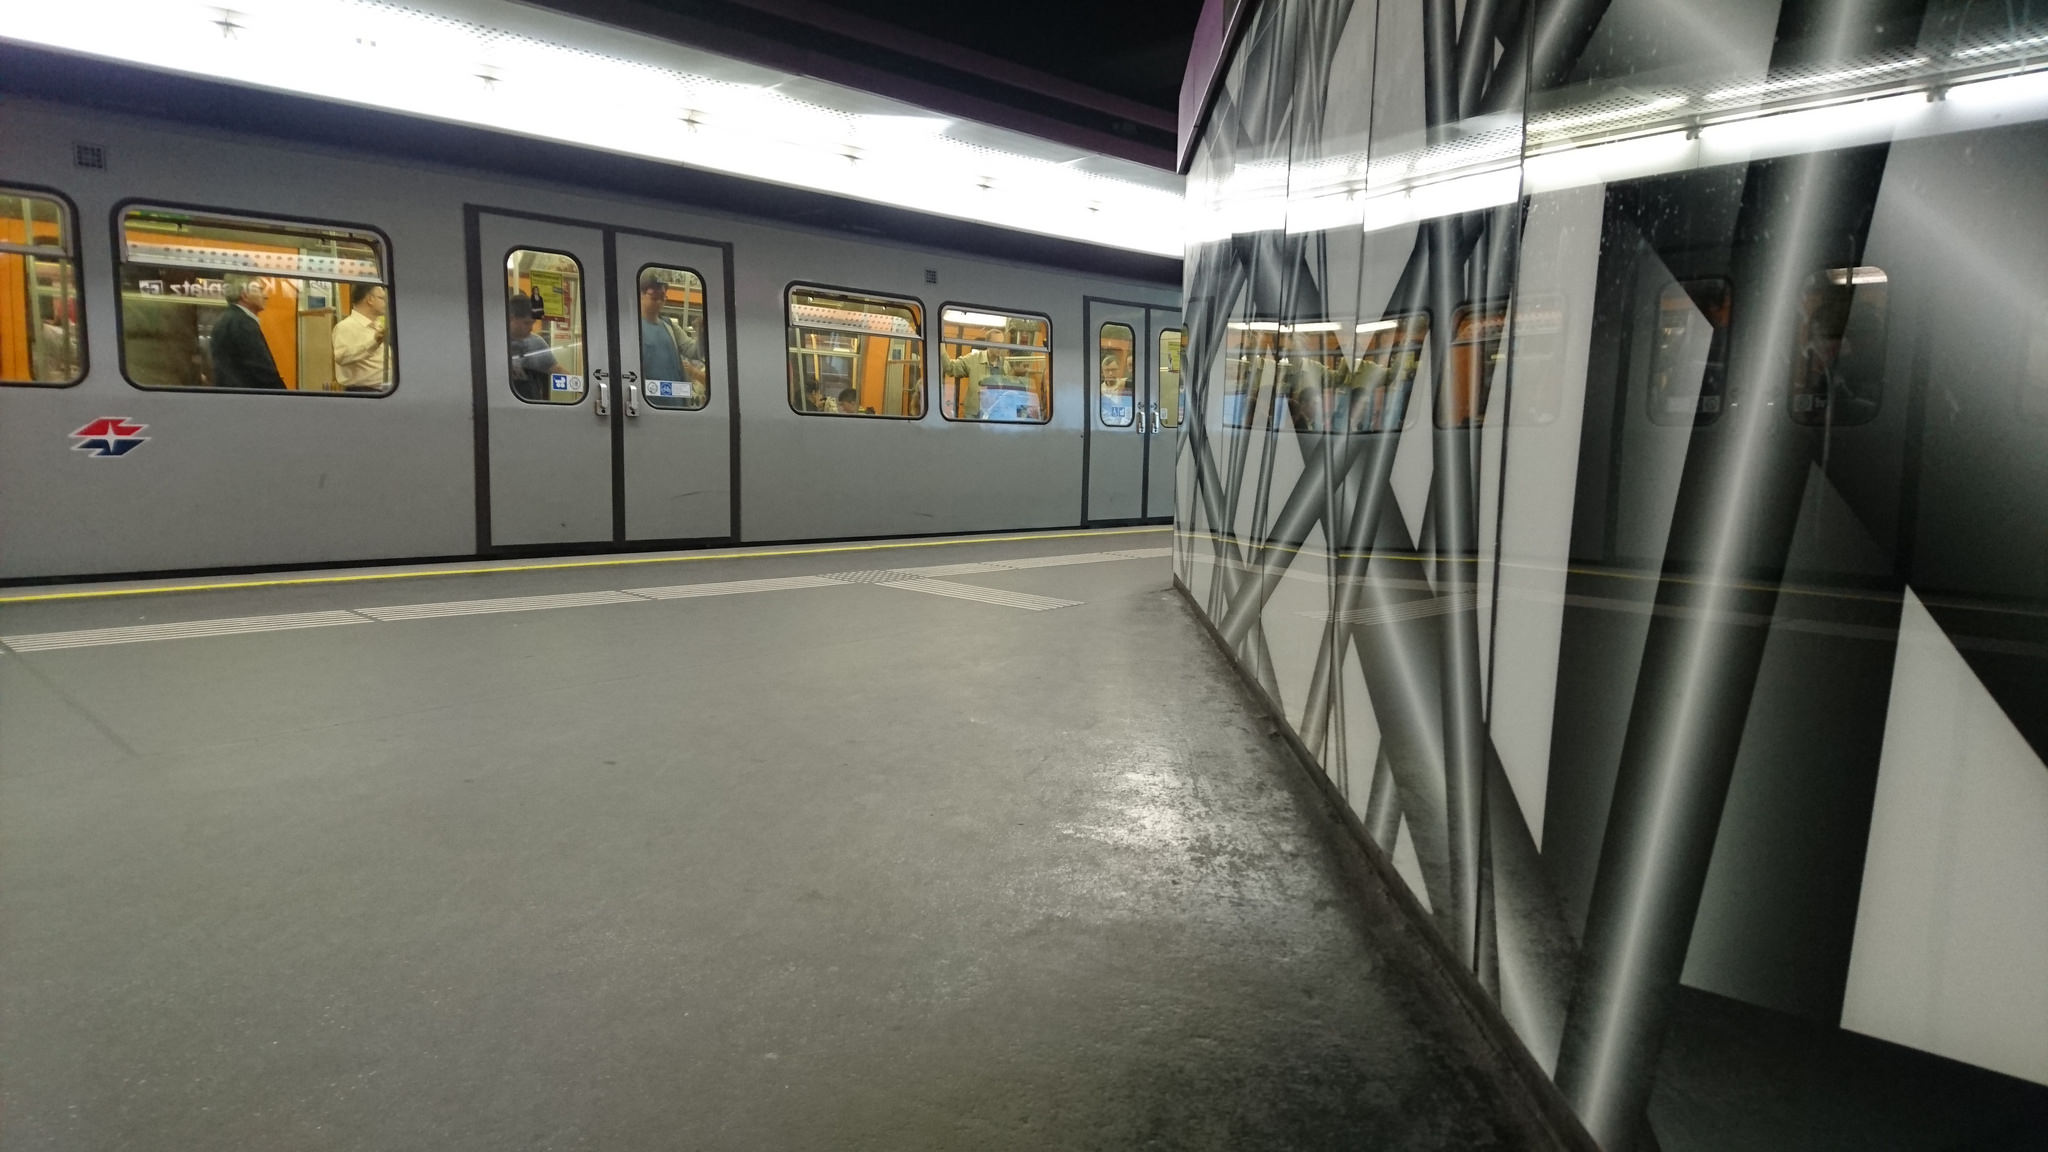 The Vienna underground